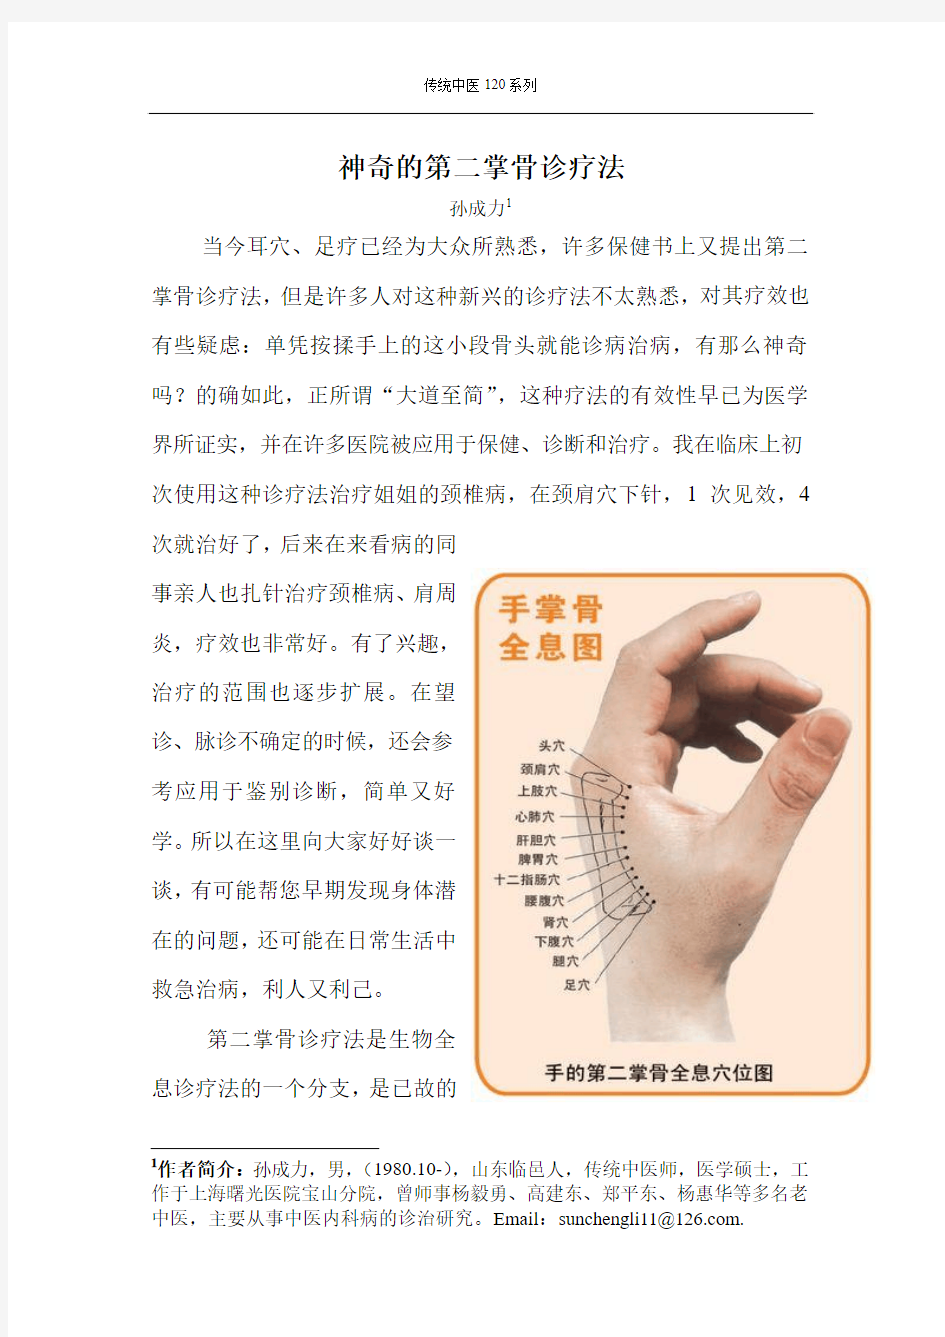 《神奇的第二掌骨诊疗法》2011-3-11上海中医药报